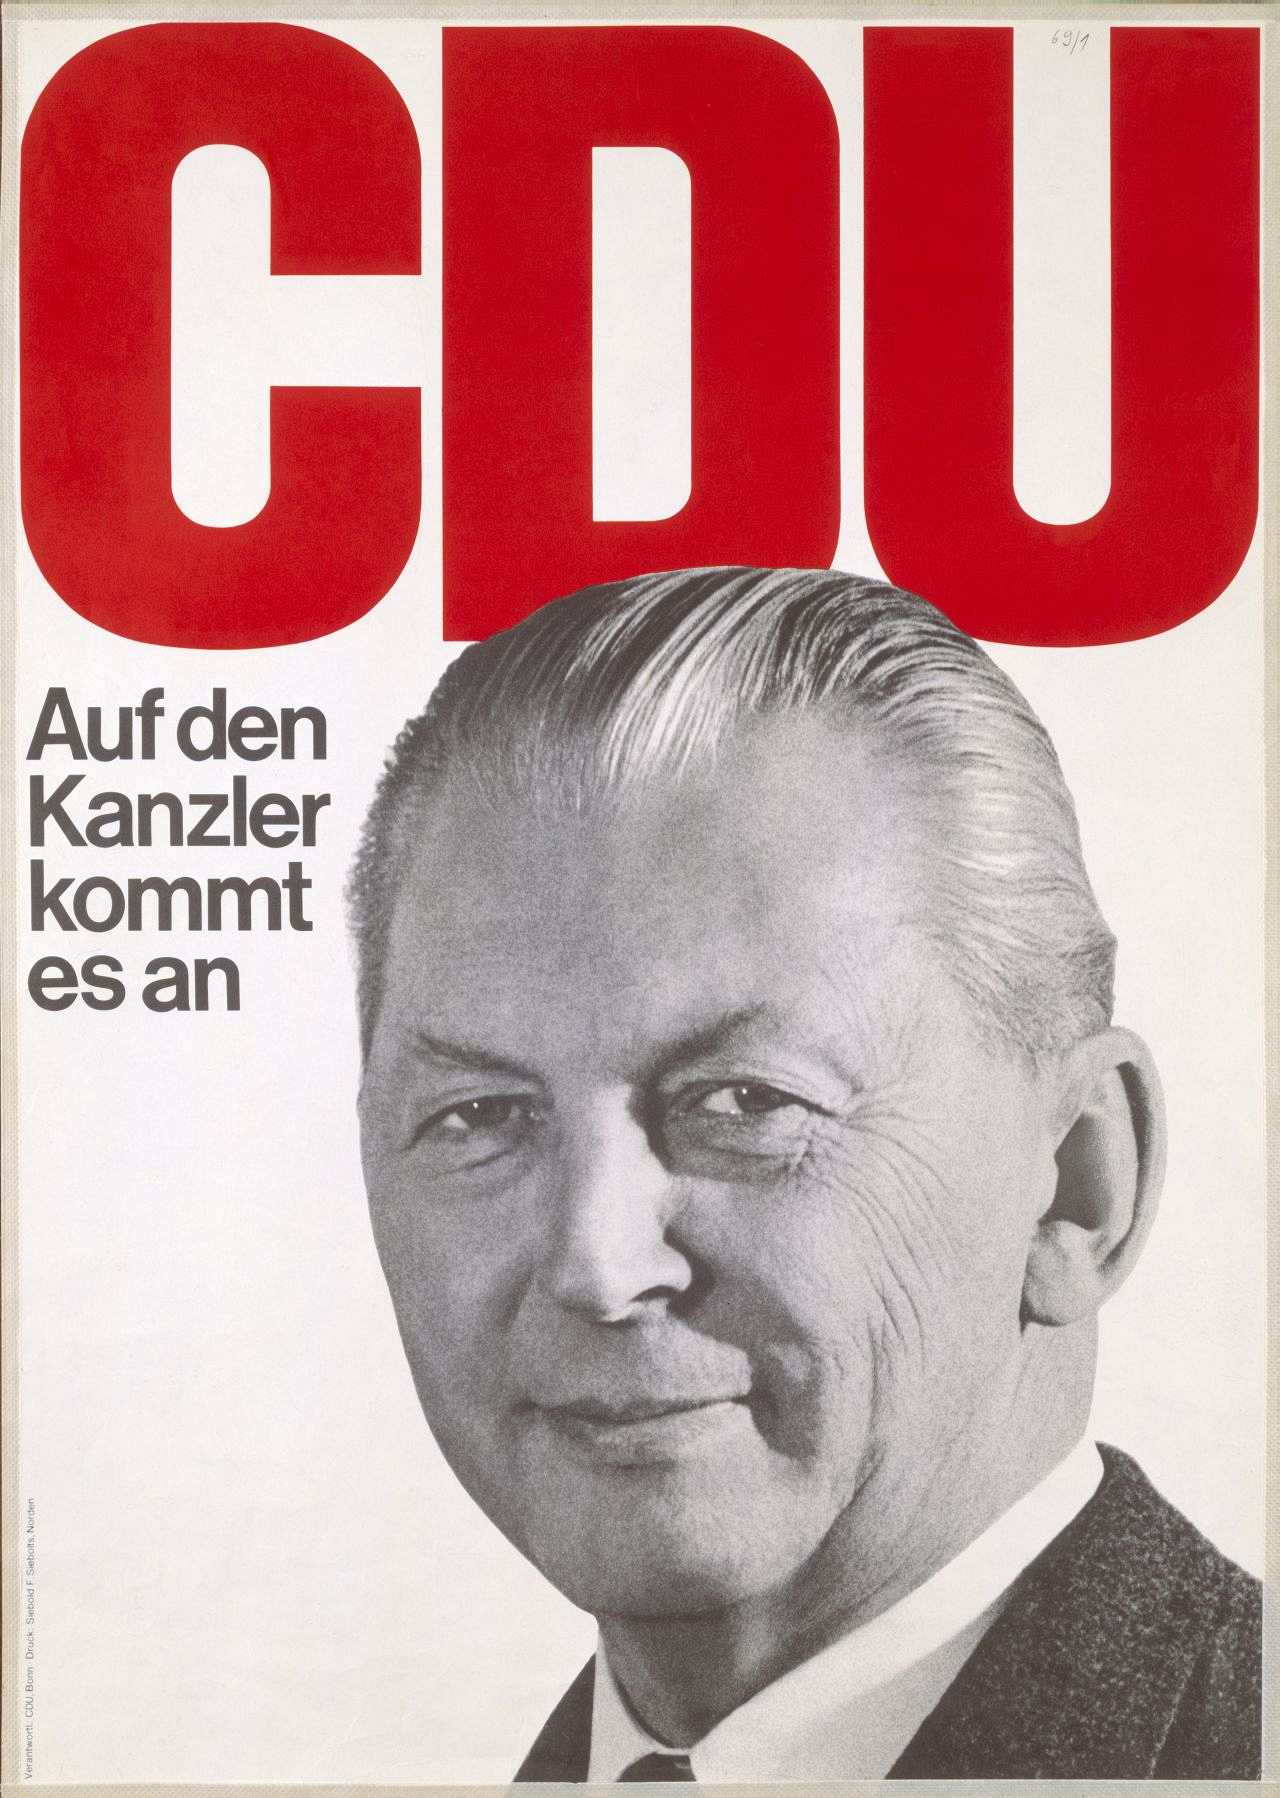 Weißgrundig; Motiv (schwarz/weiß-Foto): Portrat Kiesingers im Dreiviertelprofil; Text (rot) über der Abbildung: CDU, am linken Rand: Auf den Kanzler kommt es an (schwarz).